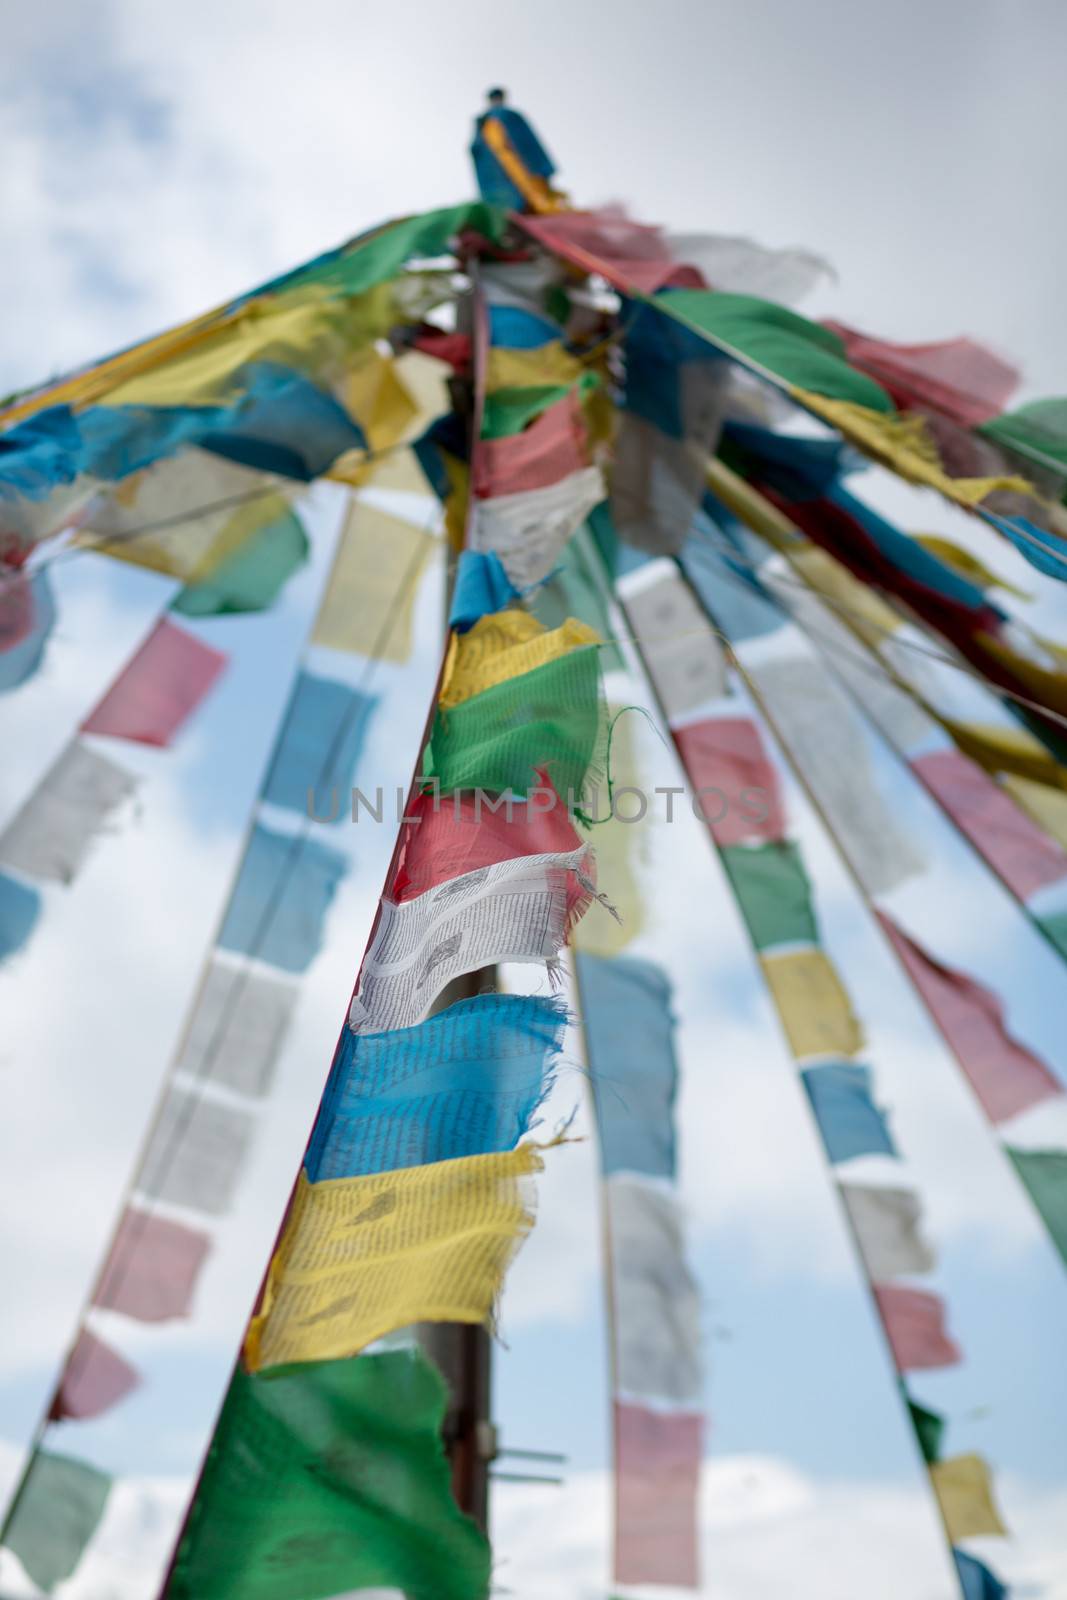 Tibetan buddhist prayer flags from Tibet in China